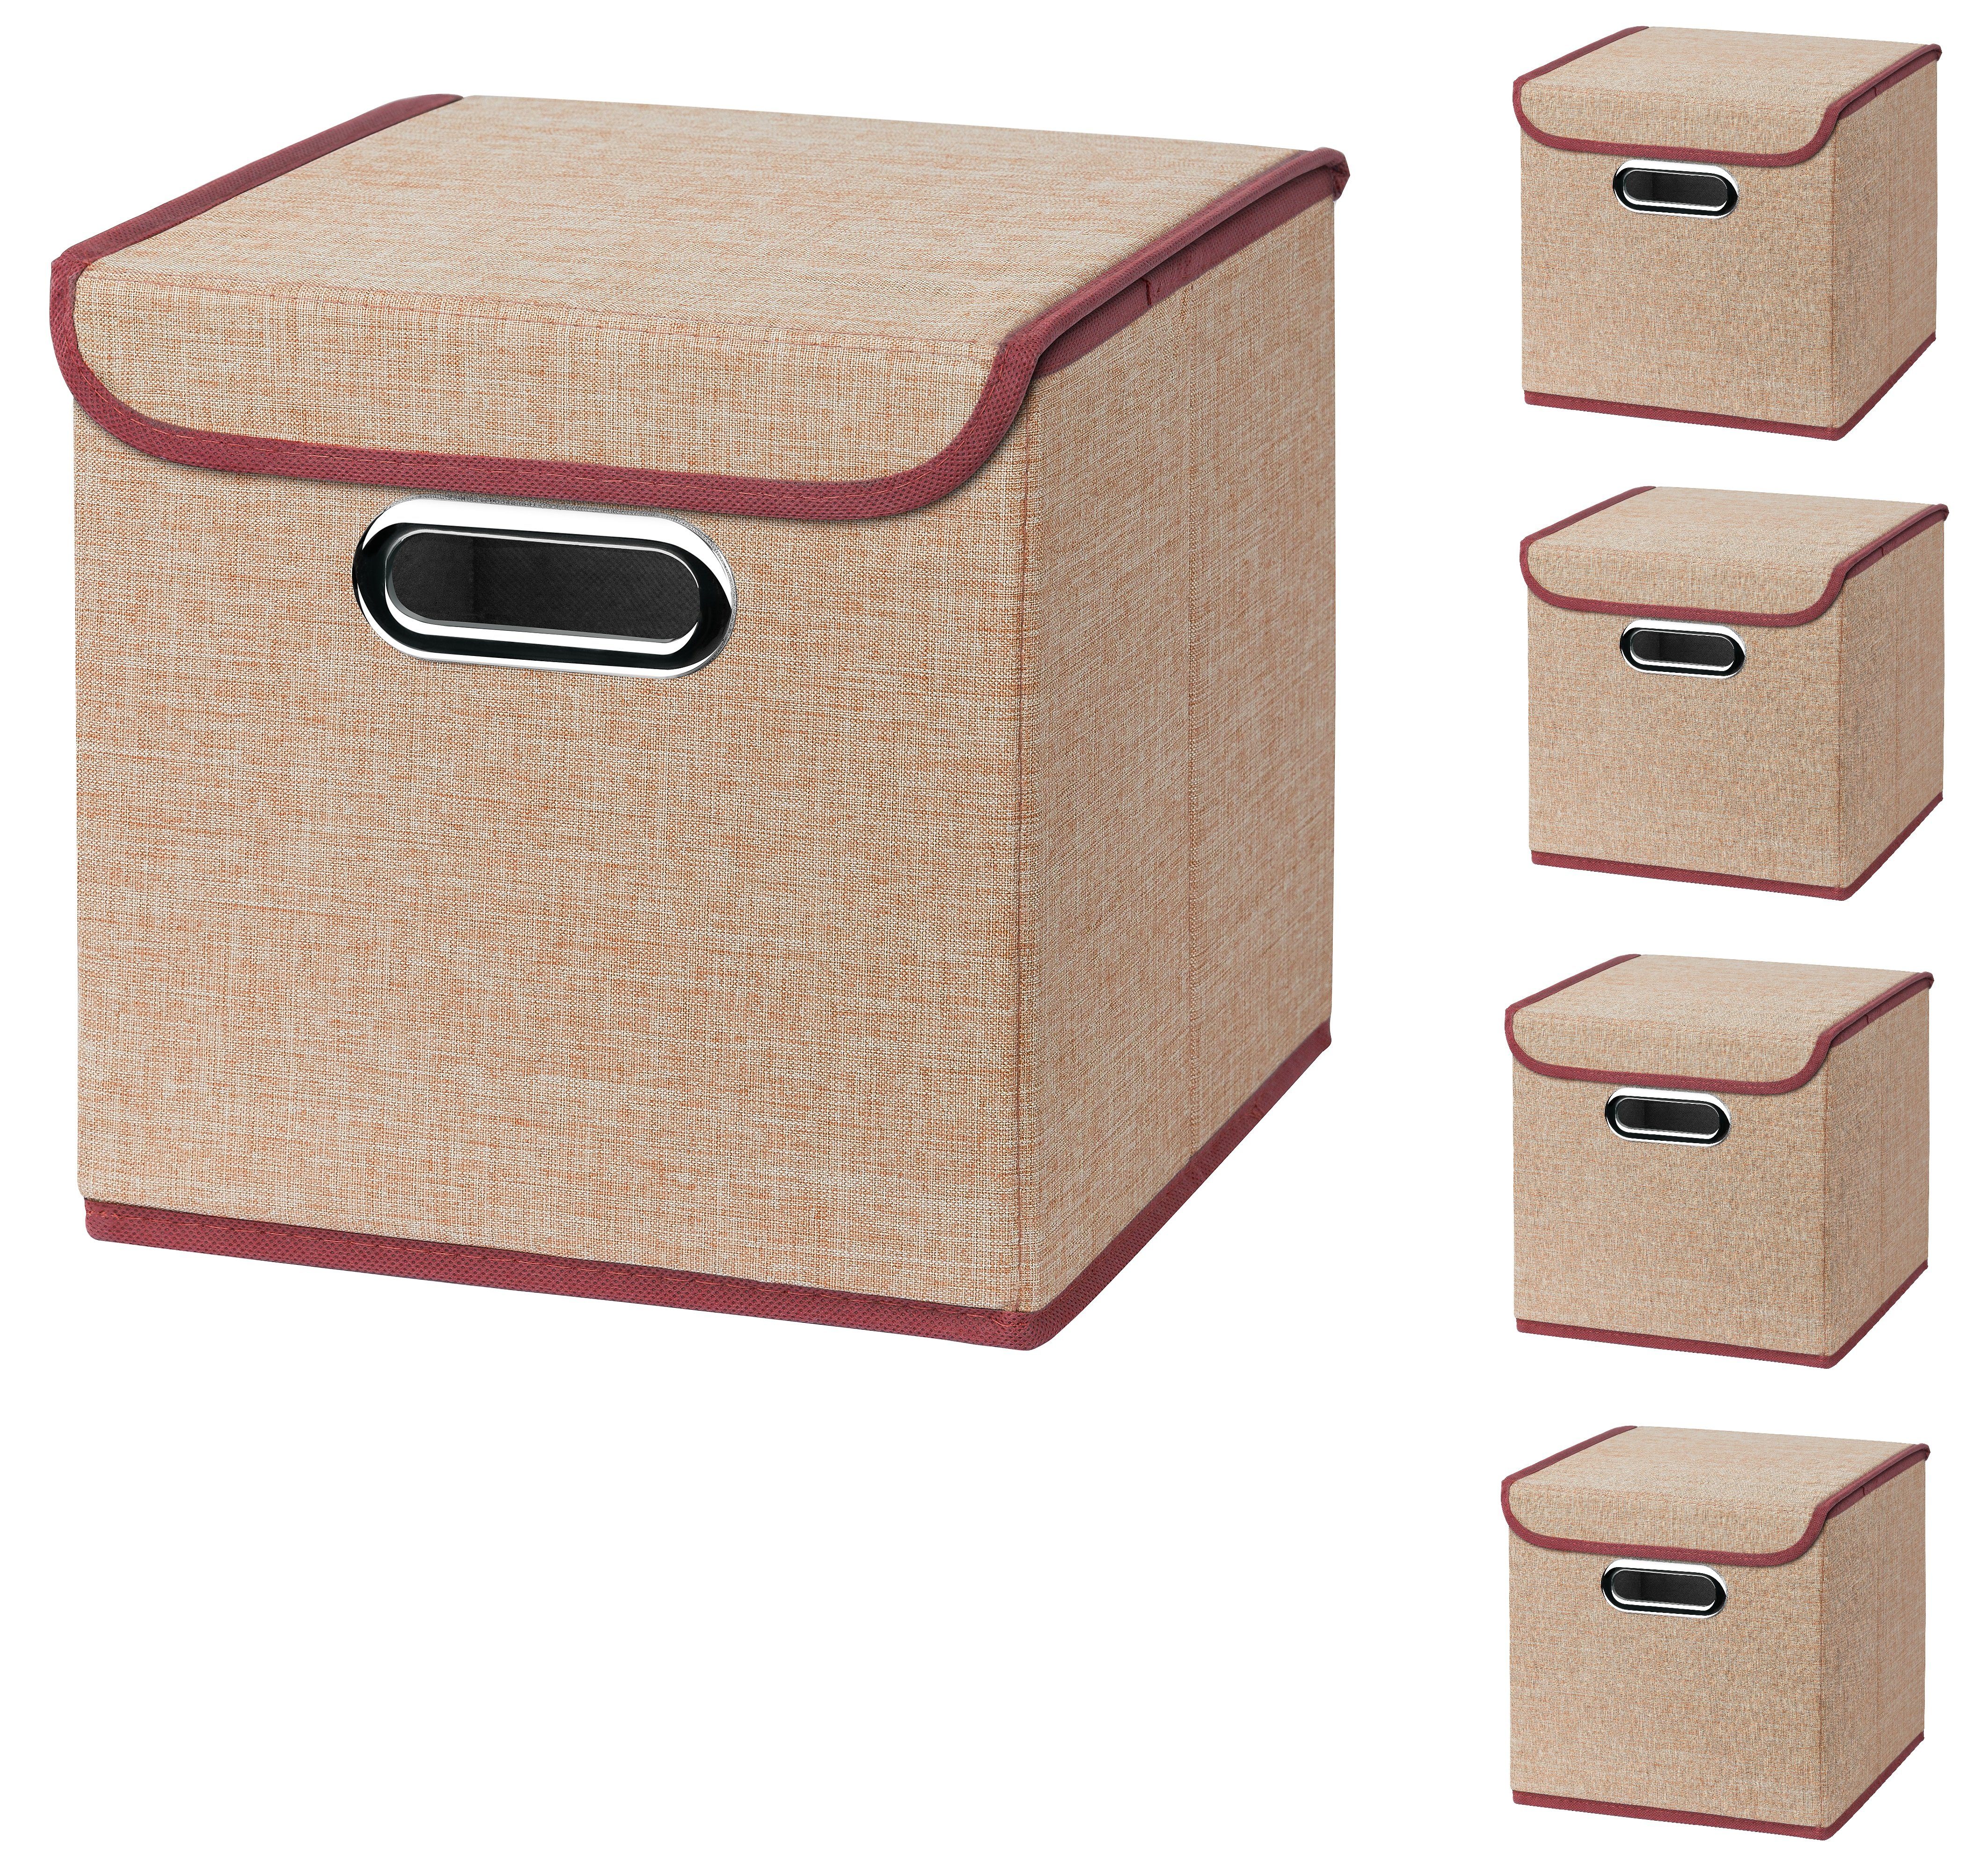 Faltbox 5 Stück Faltboxen 25 x 25 x 25 cm Stoffboxen faltbar mit Deckel in verschiedenen Farben (5er SET 25x25x25) 25cm